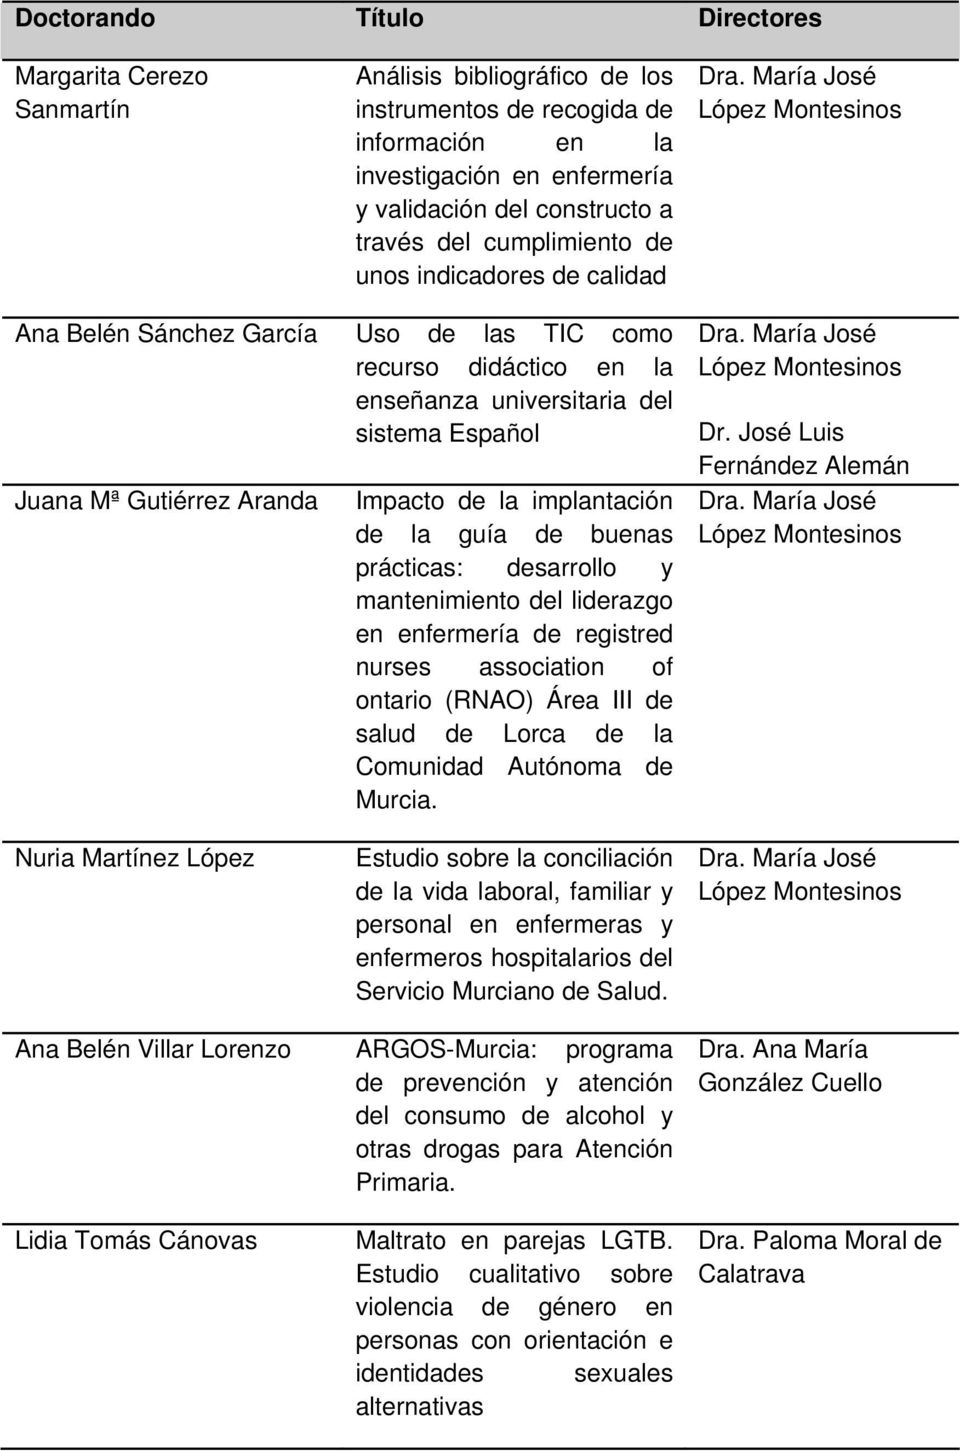 buenas prácticas: desarrollo y mantenimiento del liderazgo en enfermería de registred nurses association of ontario (RNAO) Área III de salud de Lorca de la Comunidad Autónoma de Murcia. Dr.